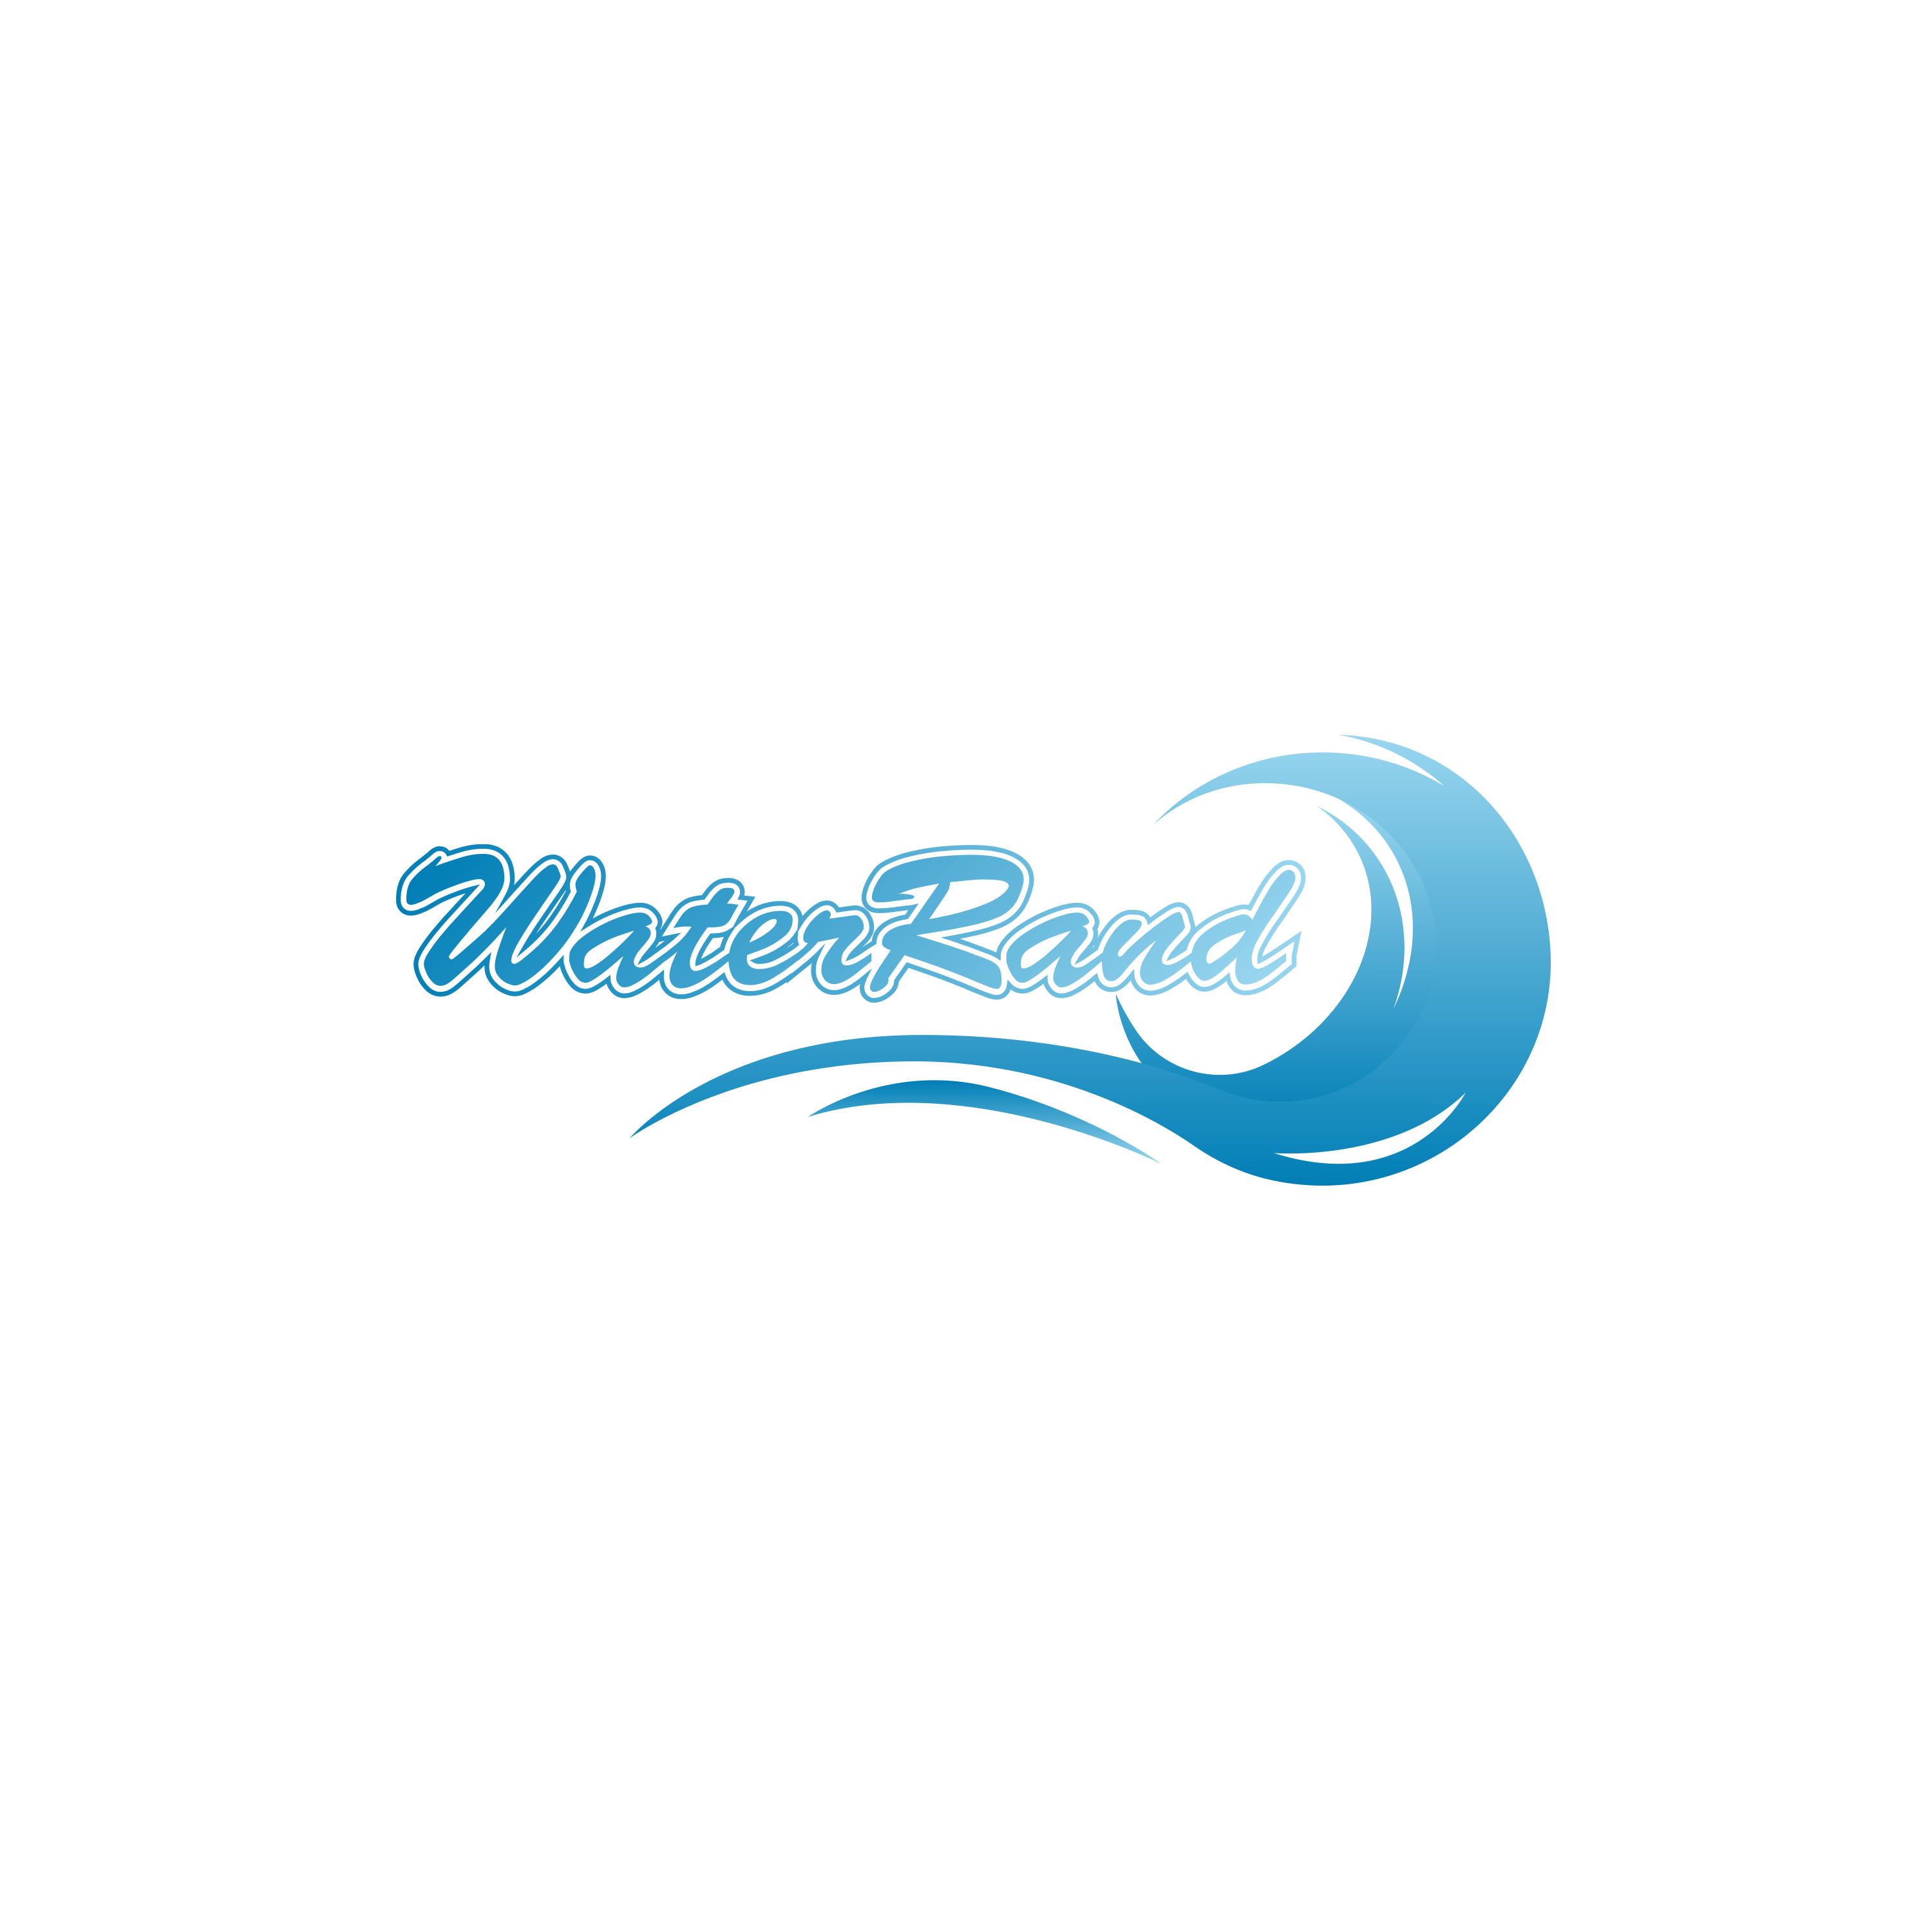 規模も演出も日本最大級な
“総合エンタテイメントフェスティバル”
「Water Rand 2022」お台場にて8月6,7日に開催！！